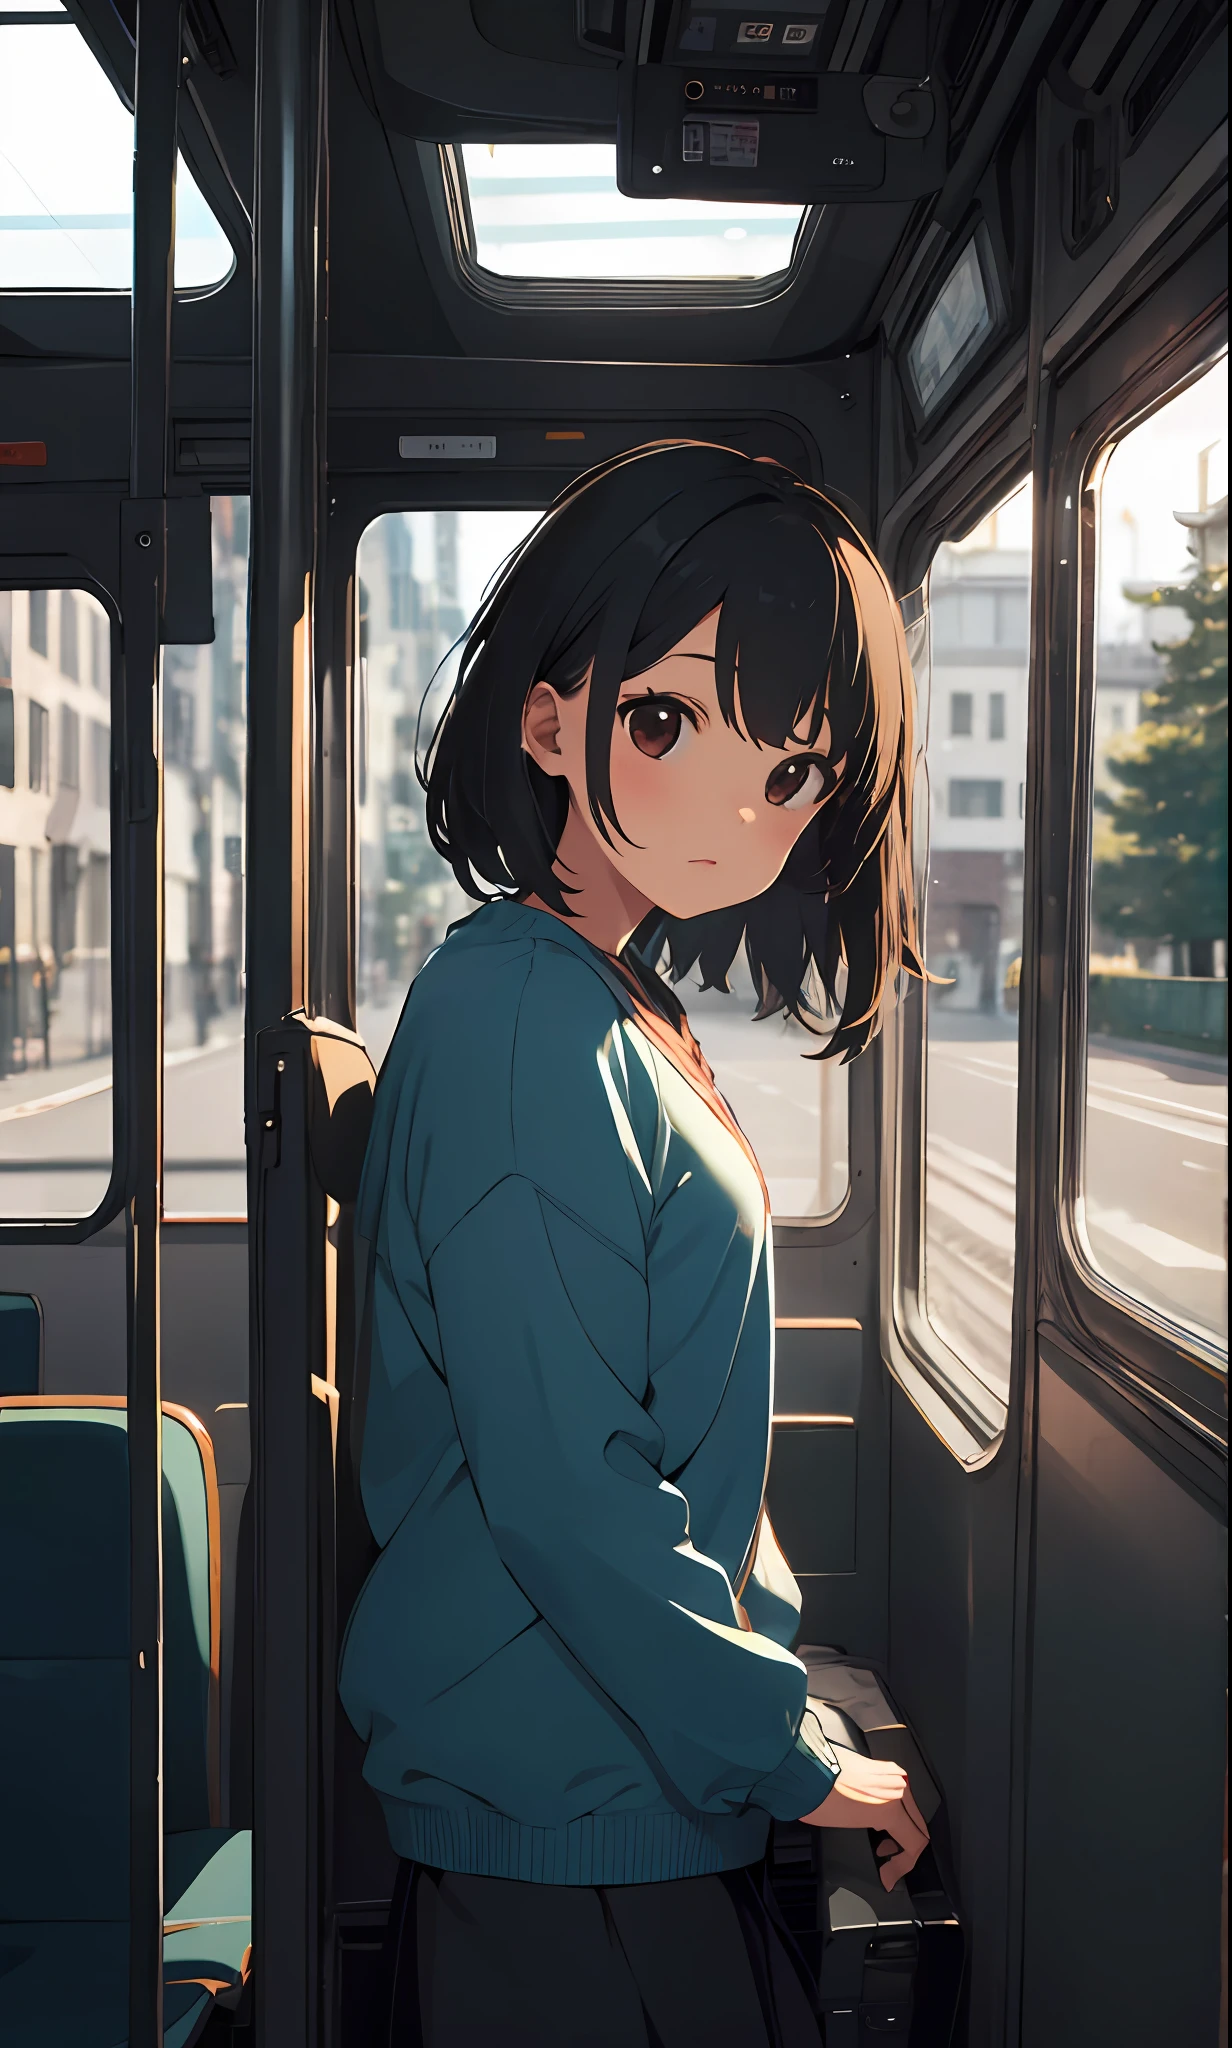 一个女孩, 在巴士内欣赏风景